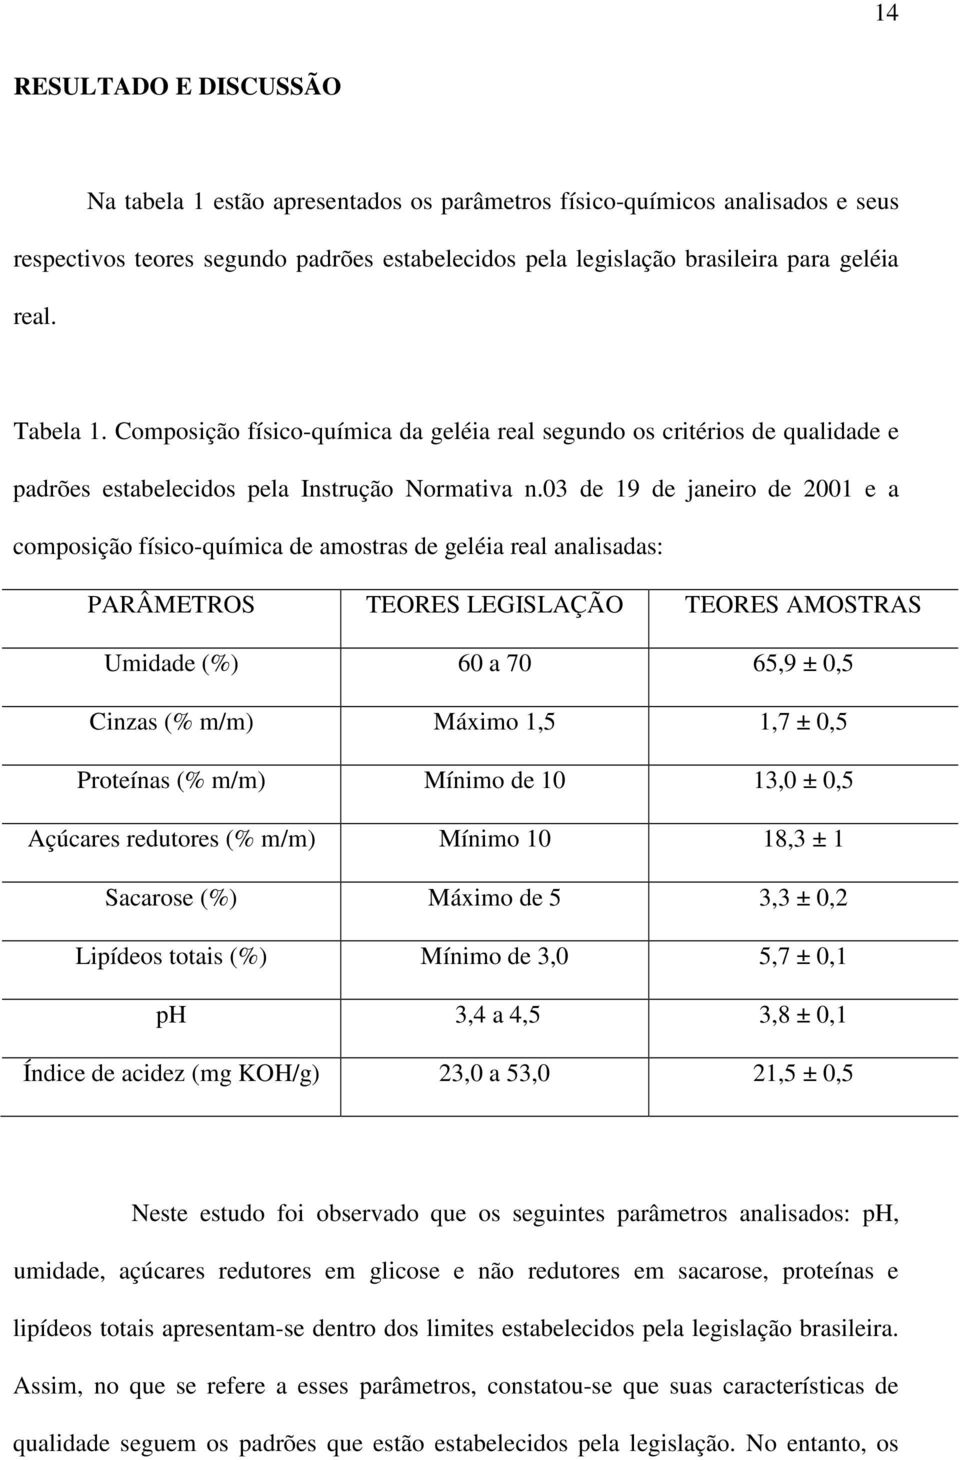 03 de 19 de janeiro de 2001 e a composição físico-química de amostras de geléia real analisadas: PARÂMETROS TEORES LEGISLAÇÃO TEORES AMOSTRAS Umidade (%) 60 a 70 65,9 ± 0,5 Cinzas (% m/m) Máximo 1,5